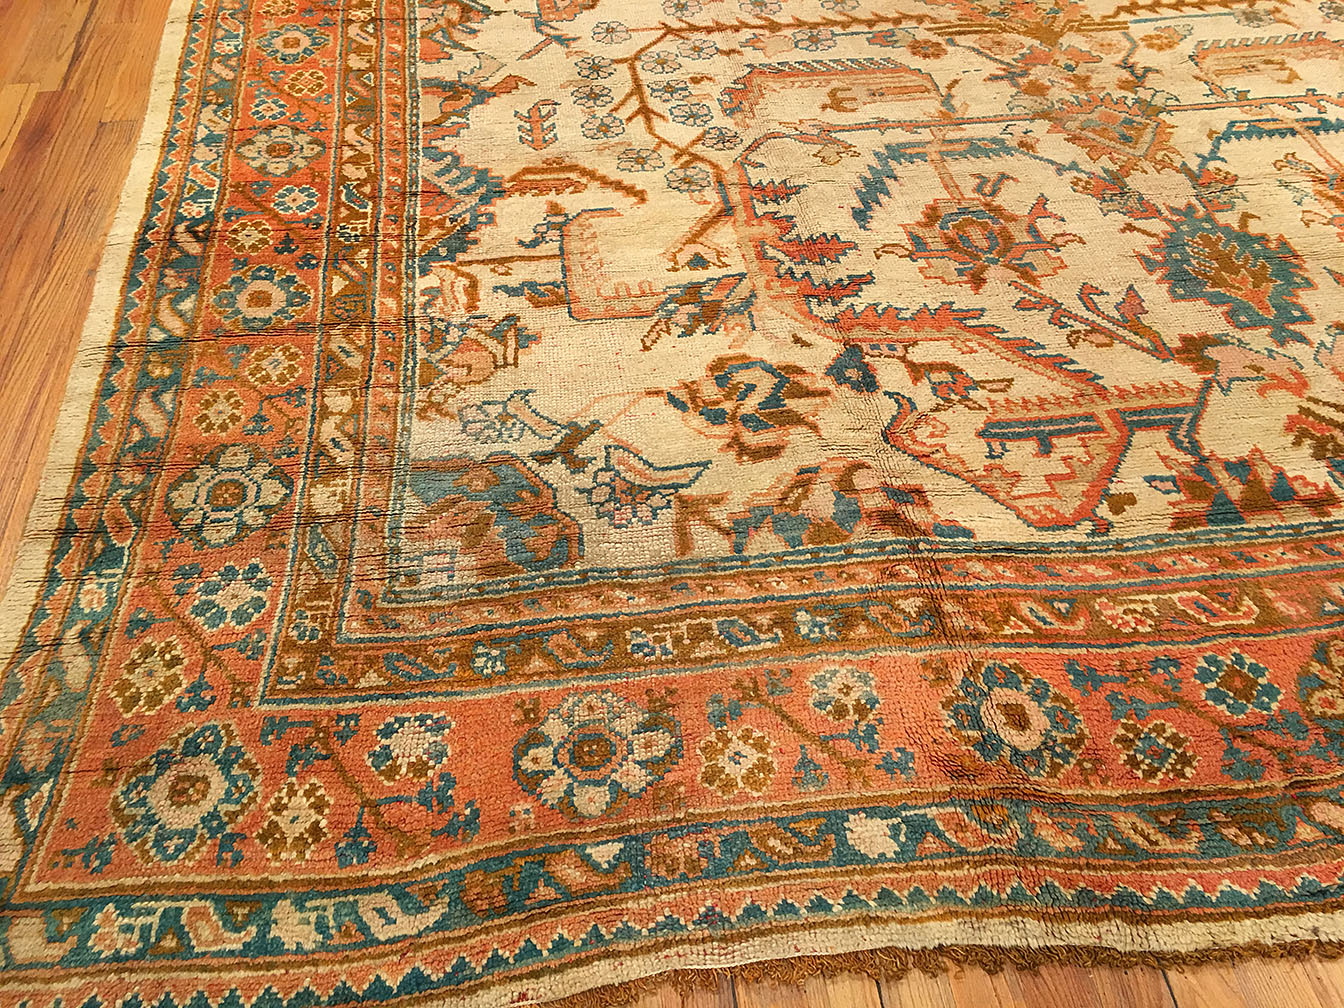 Antique oushak Carpet - # 53596